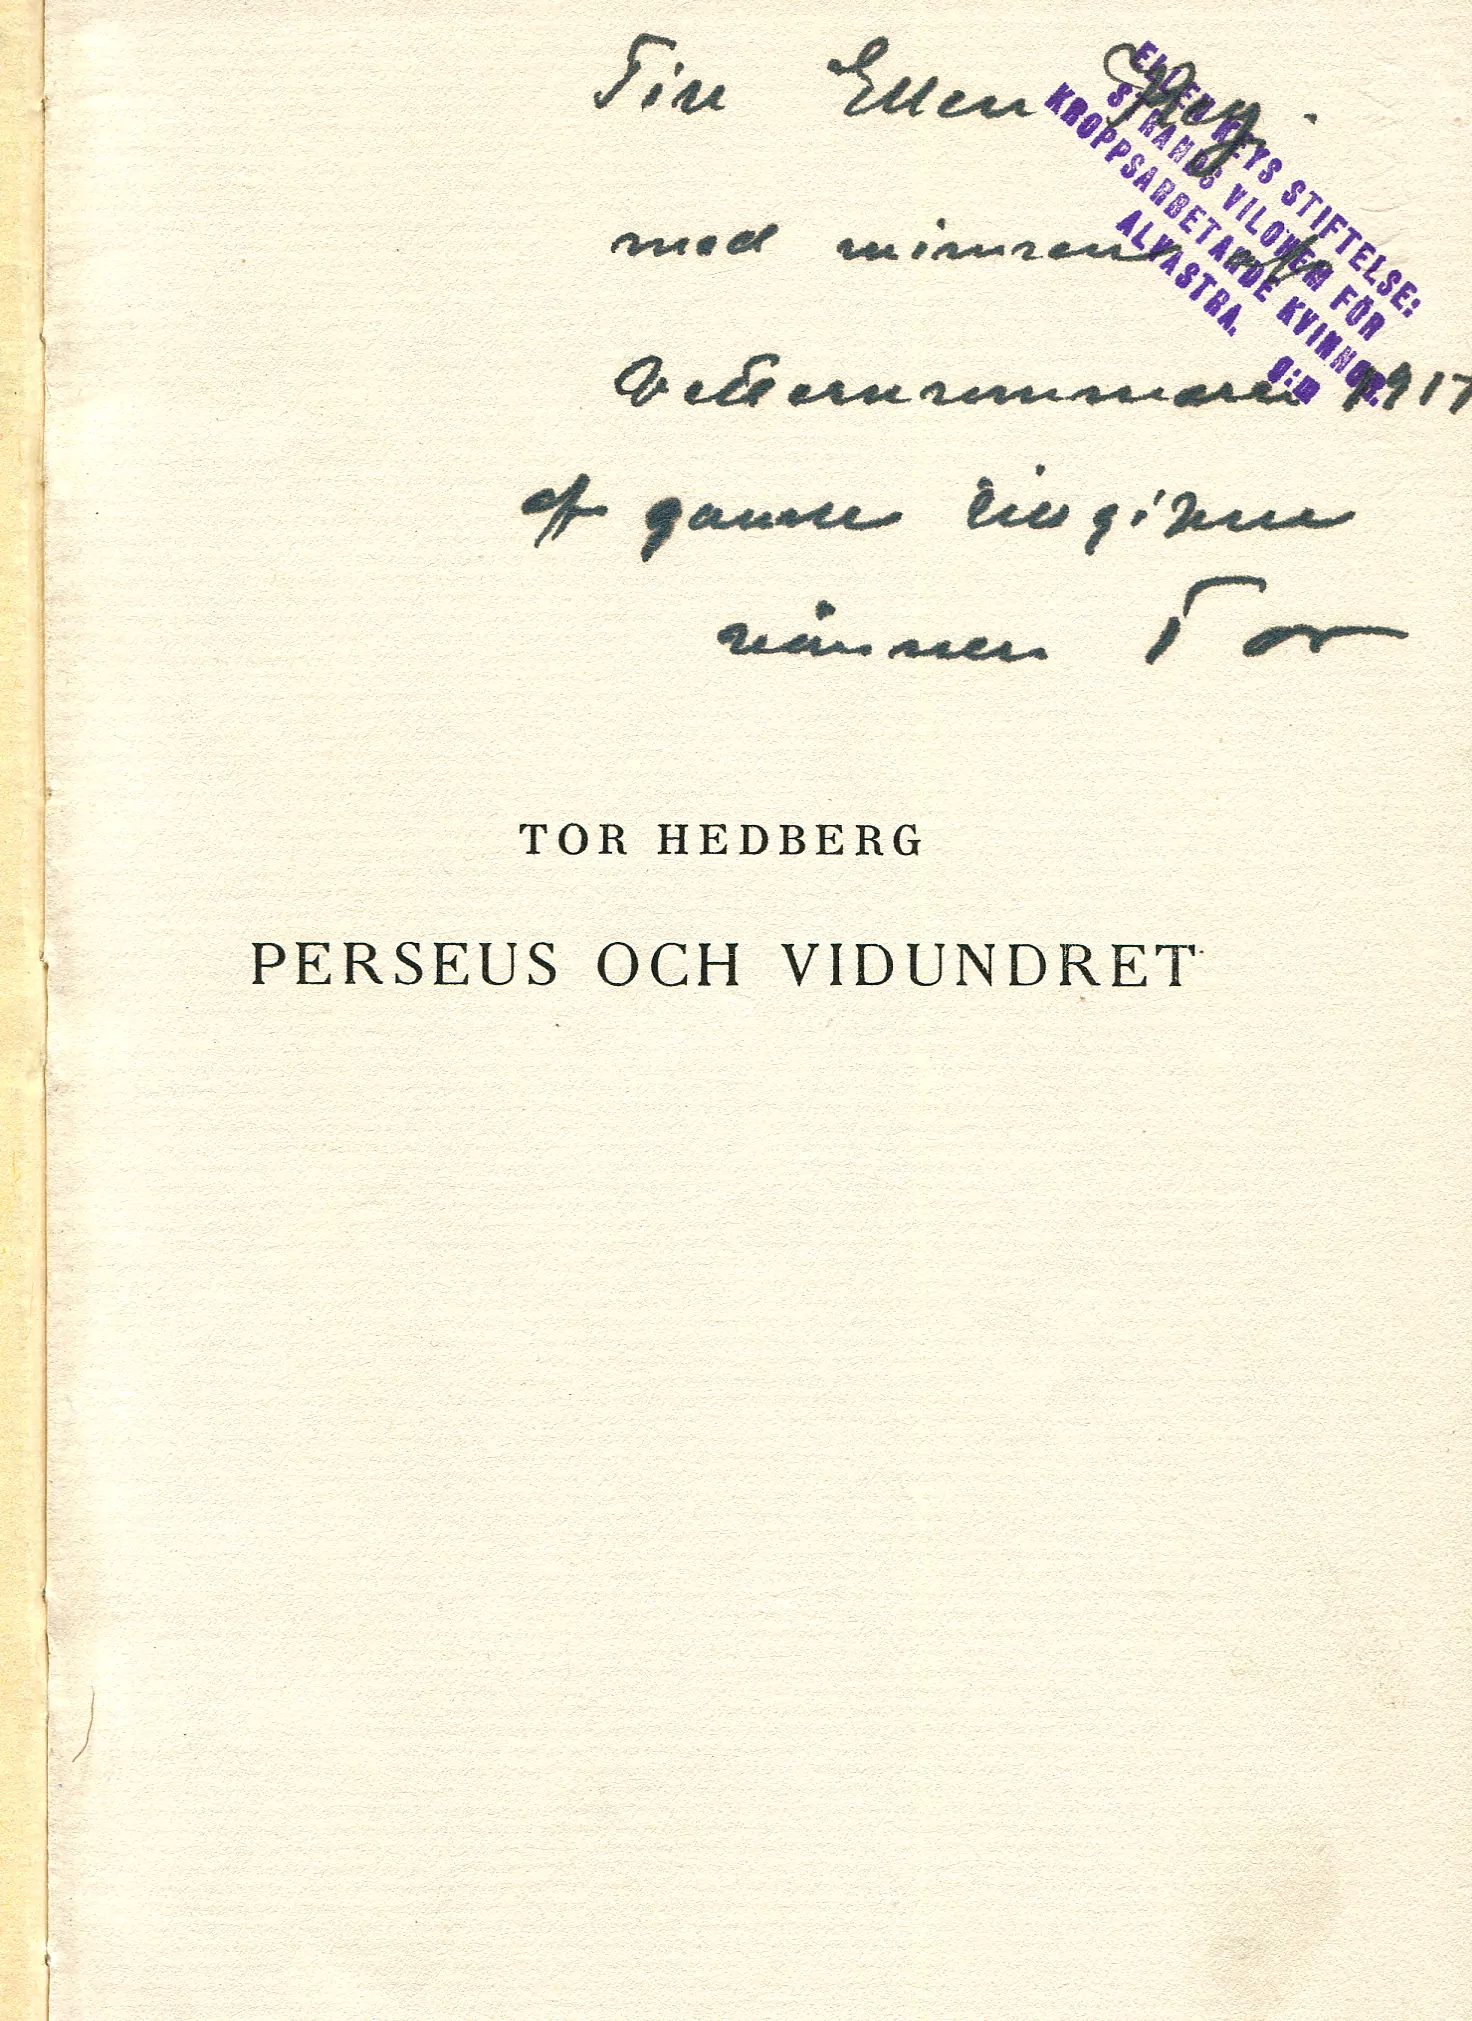 Perseus och vidundret , Stockholm 1917